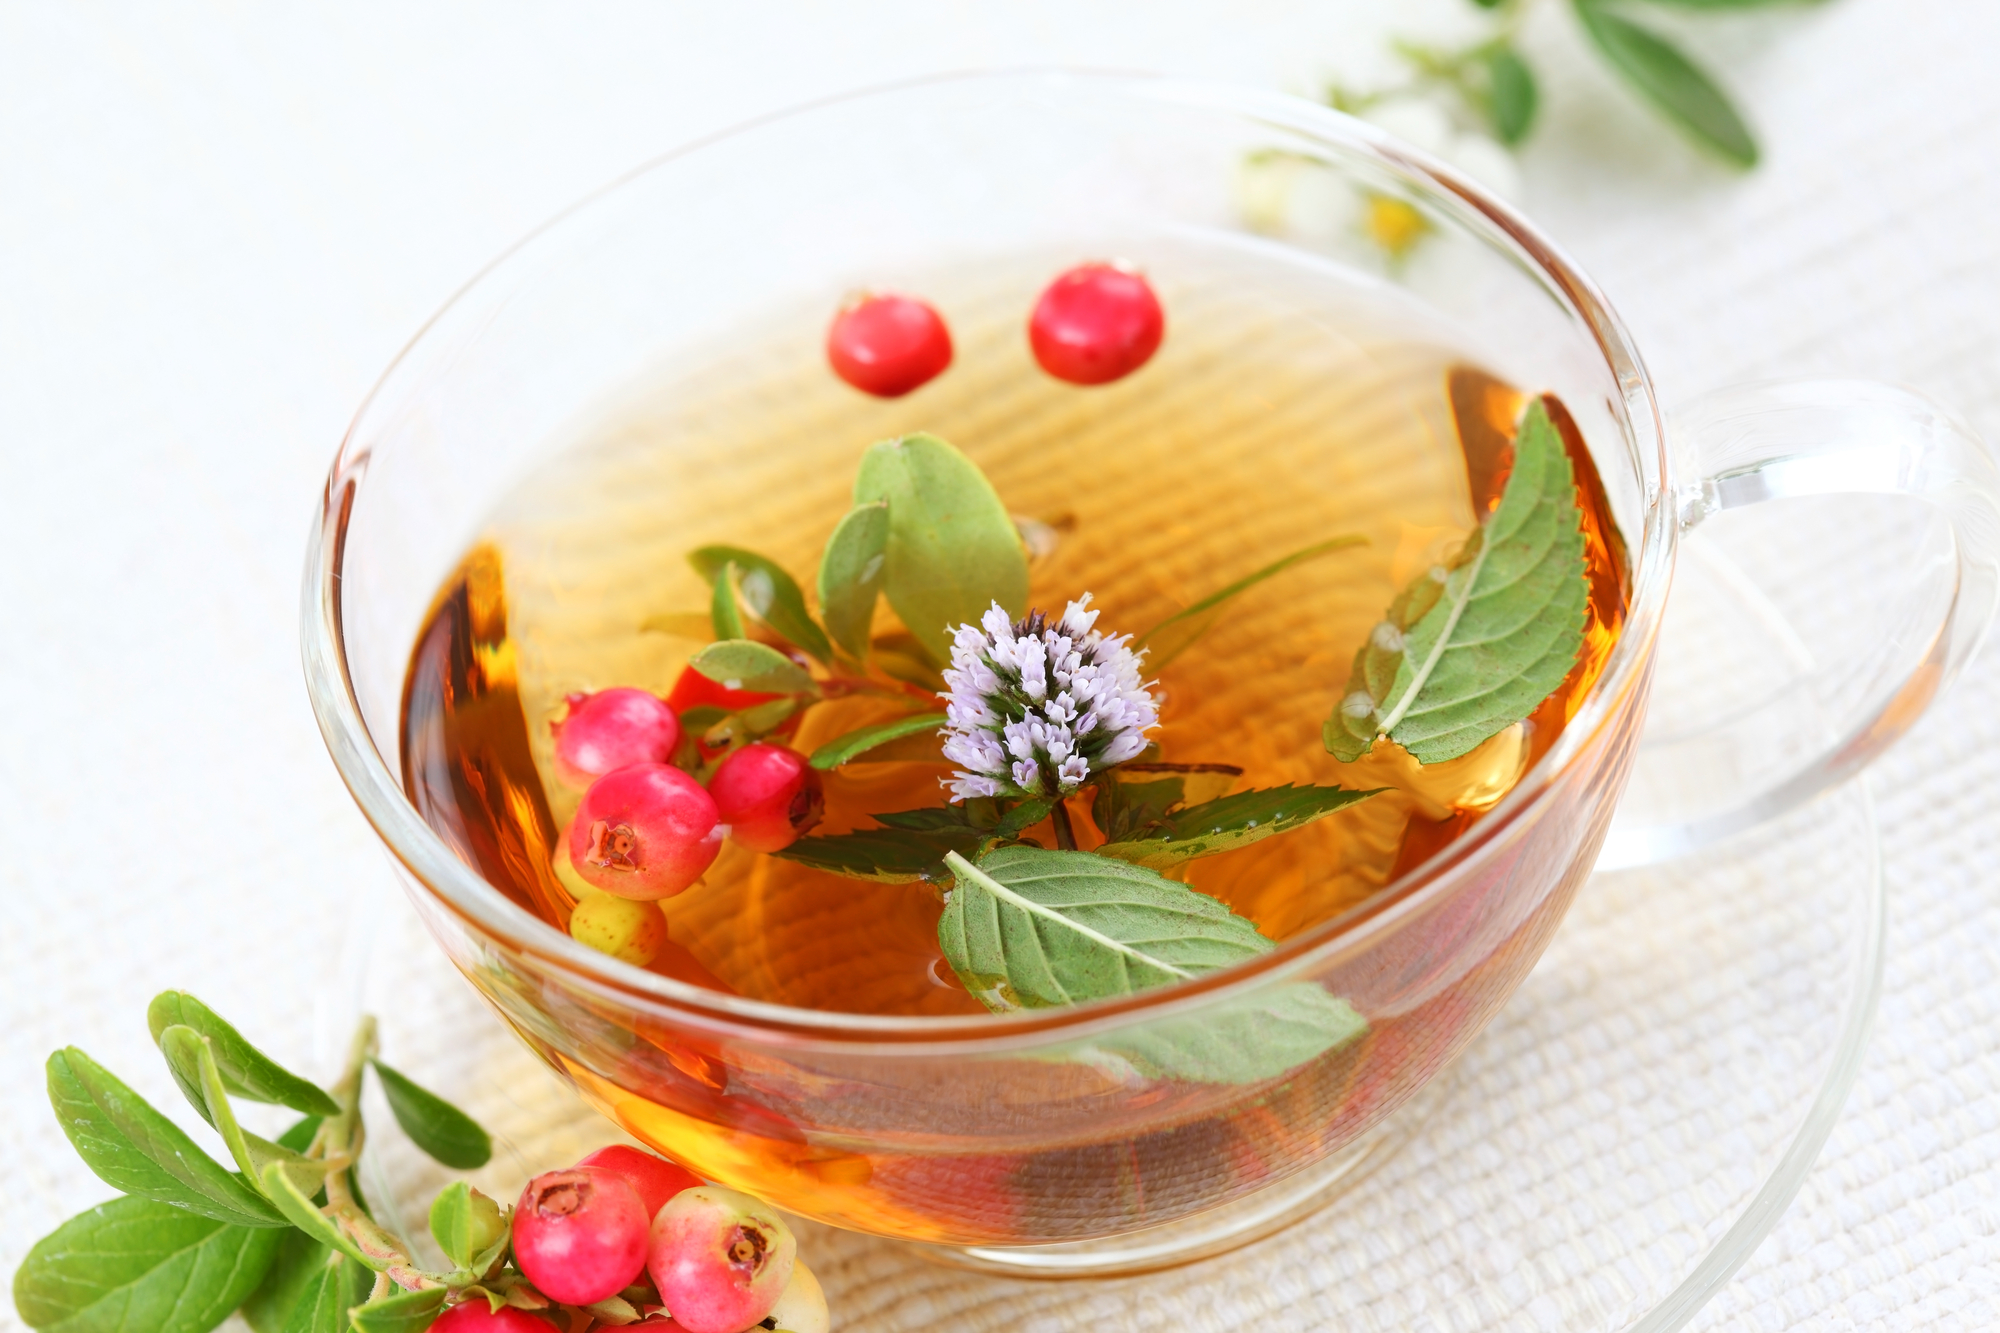 Ceaiul care întărește sistemul imunitar, cu multe beneficii pentru organism. Te ajută să slăbești și ajută la eliminarea pietrelor la rinichi/ Sursă foto: depositphotos.com